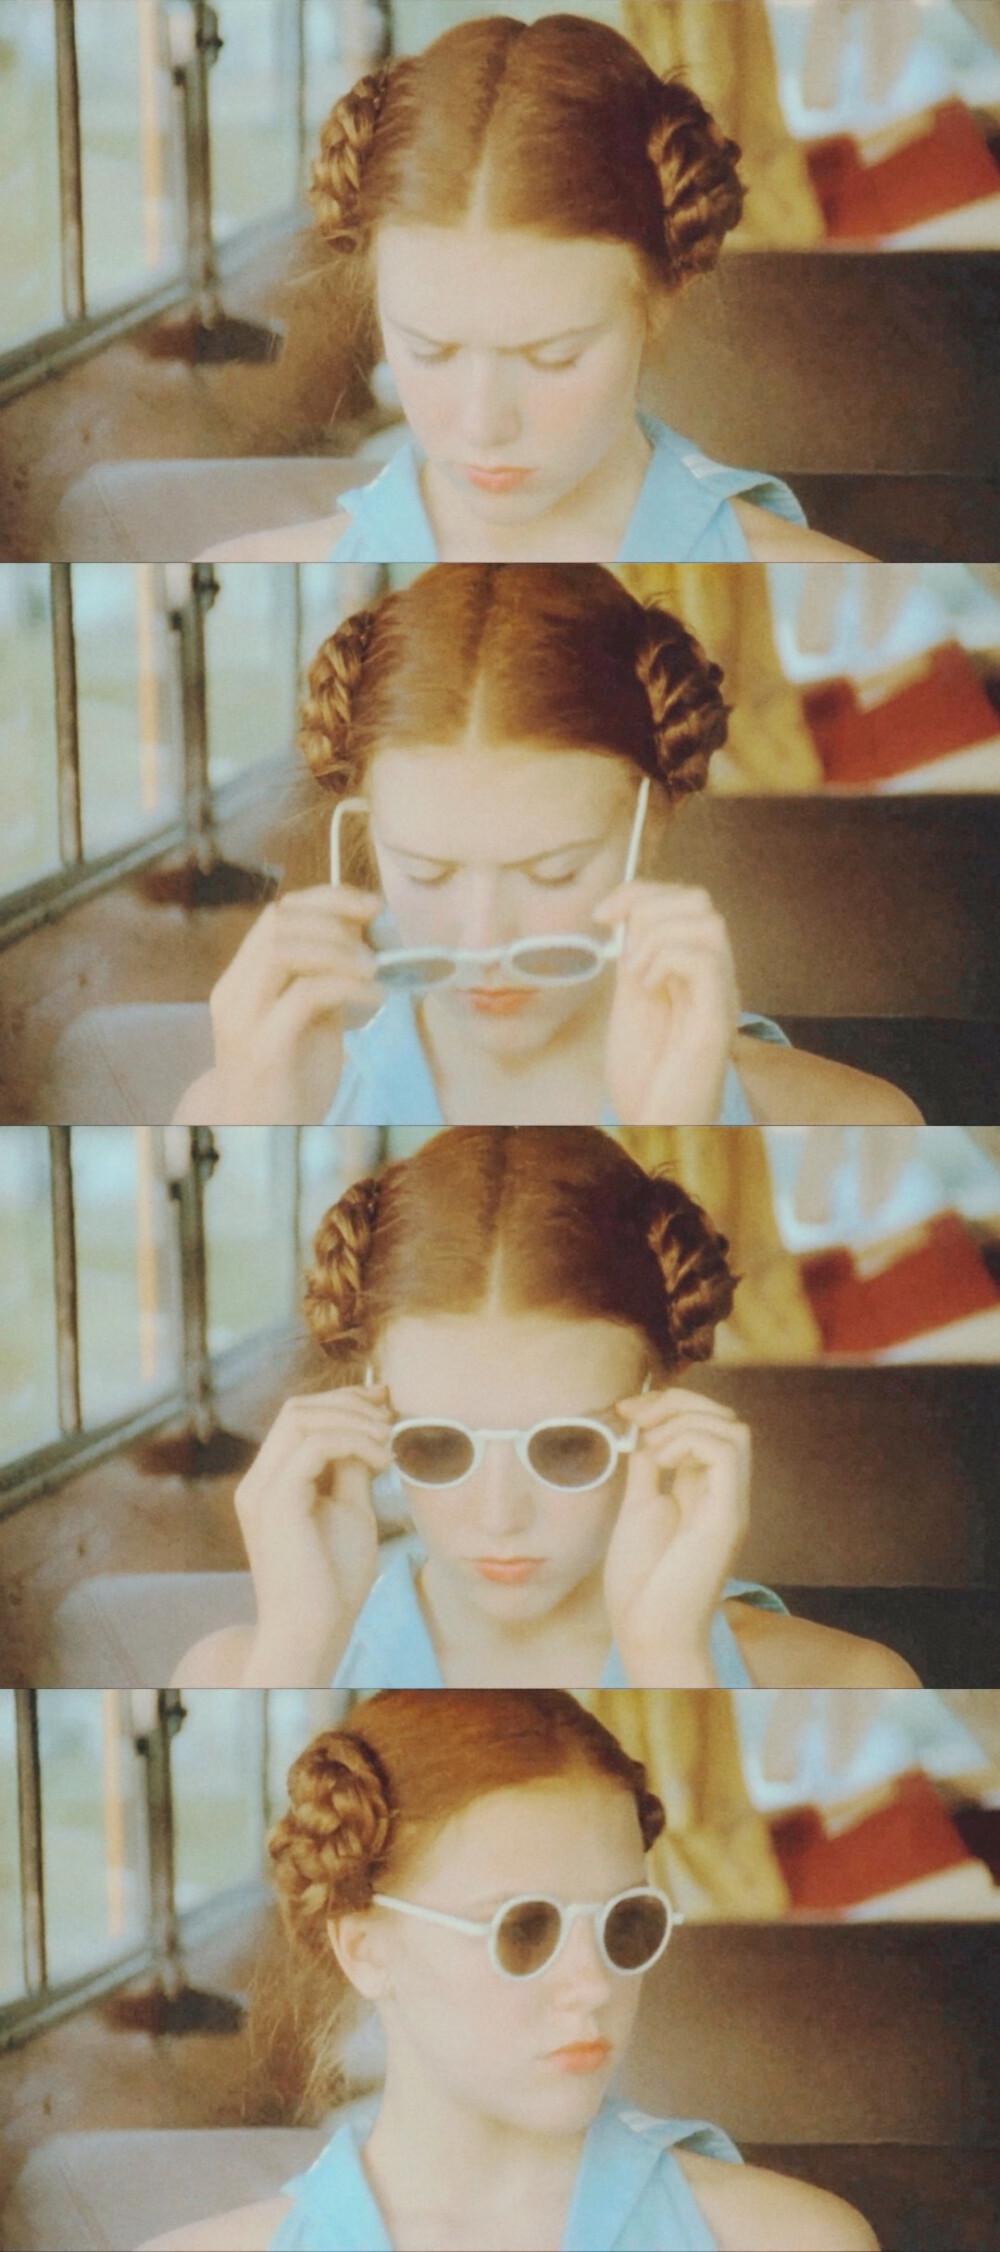 97版电影洛丽塔lolita电影截图自截调色头像壁纸背景多米尼克斯万电影